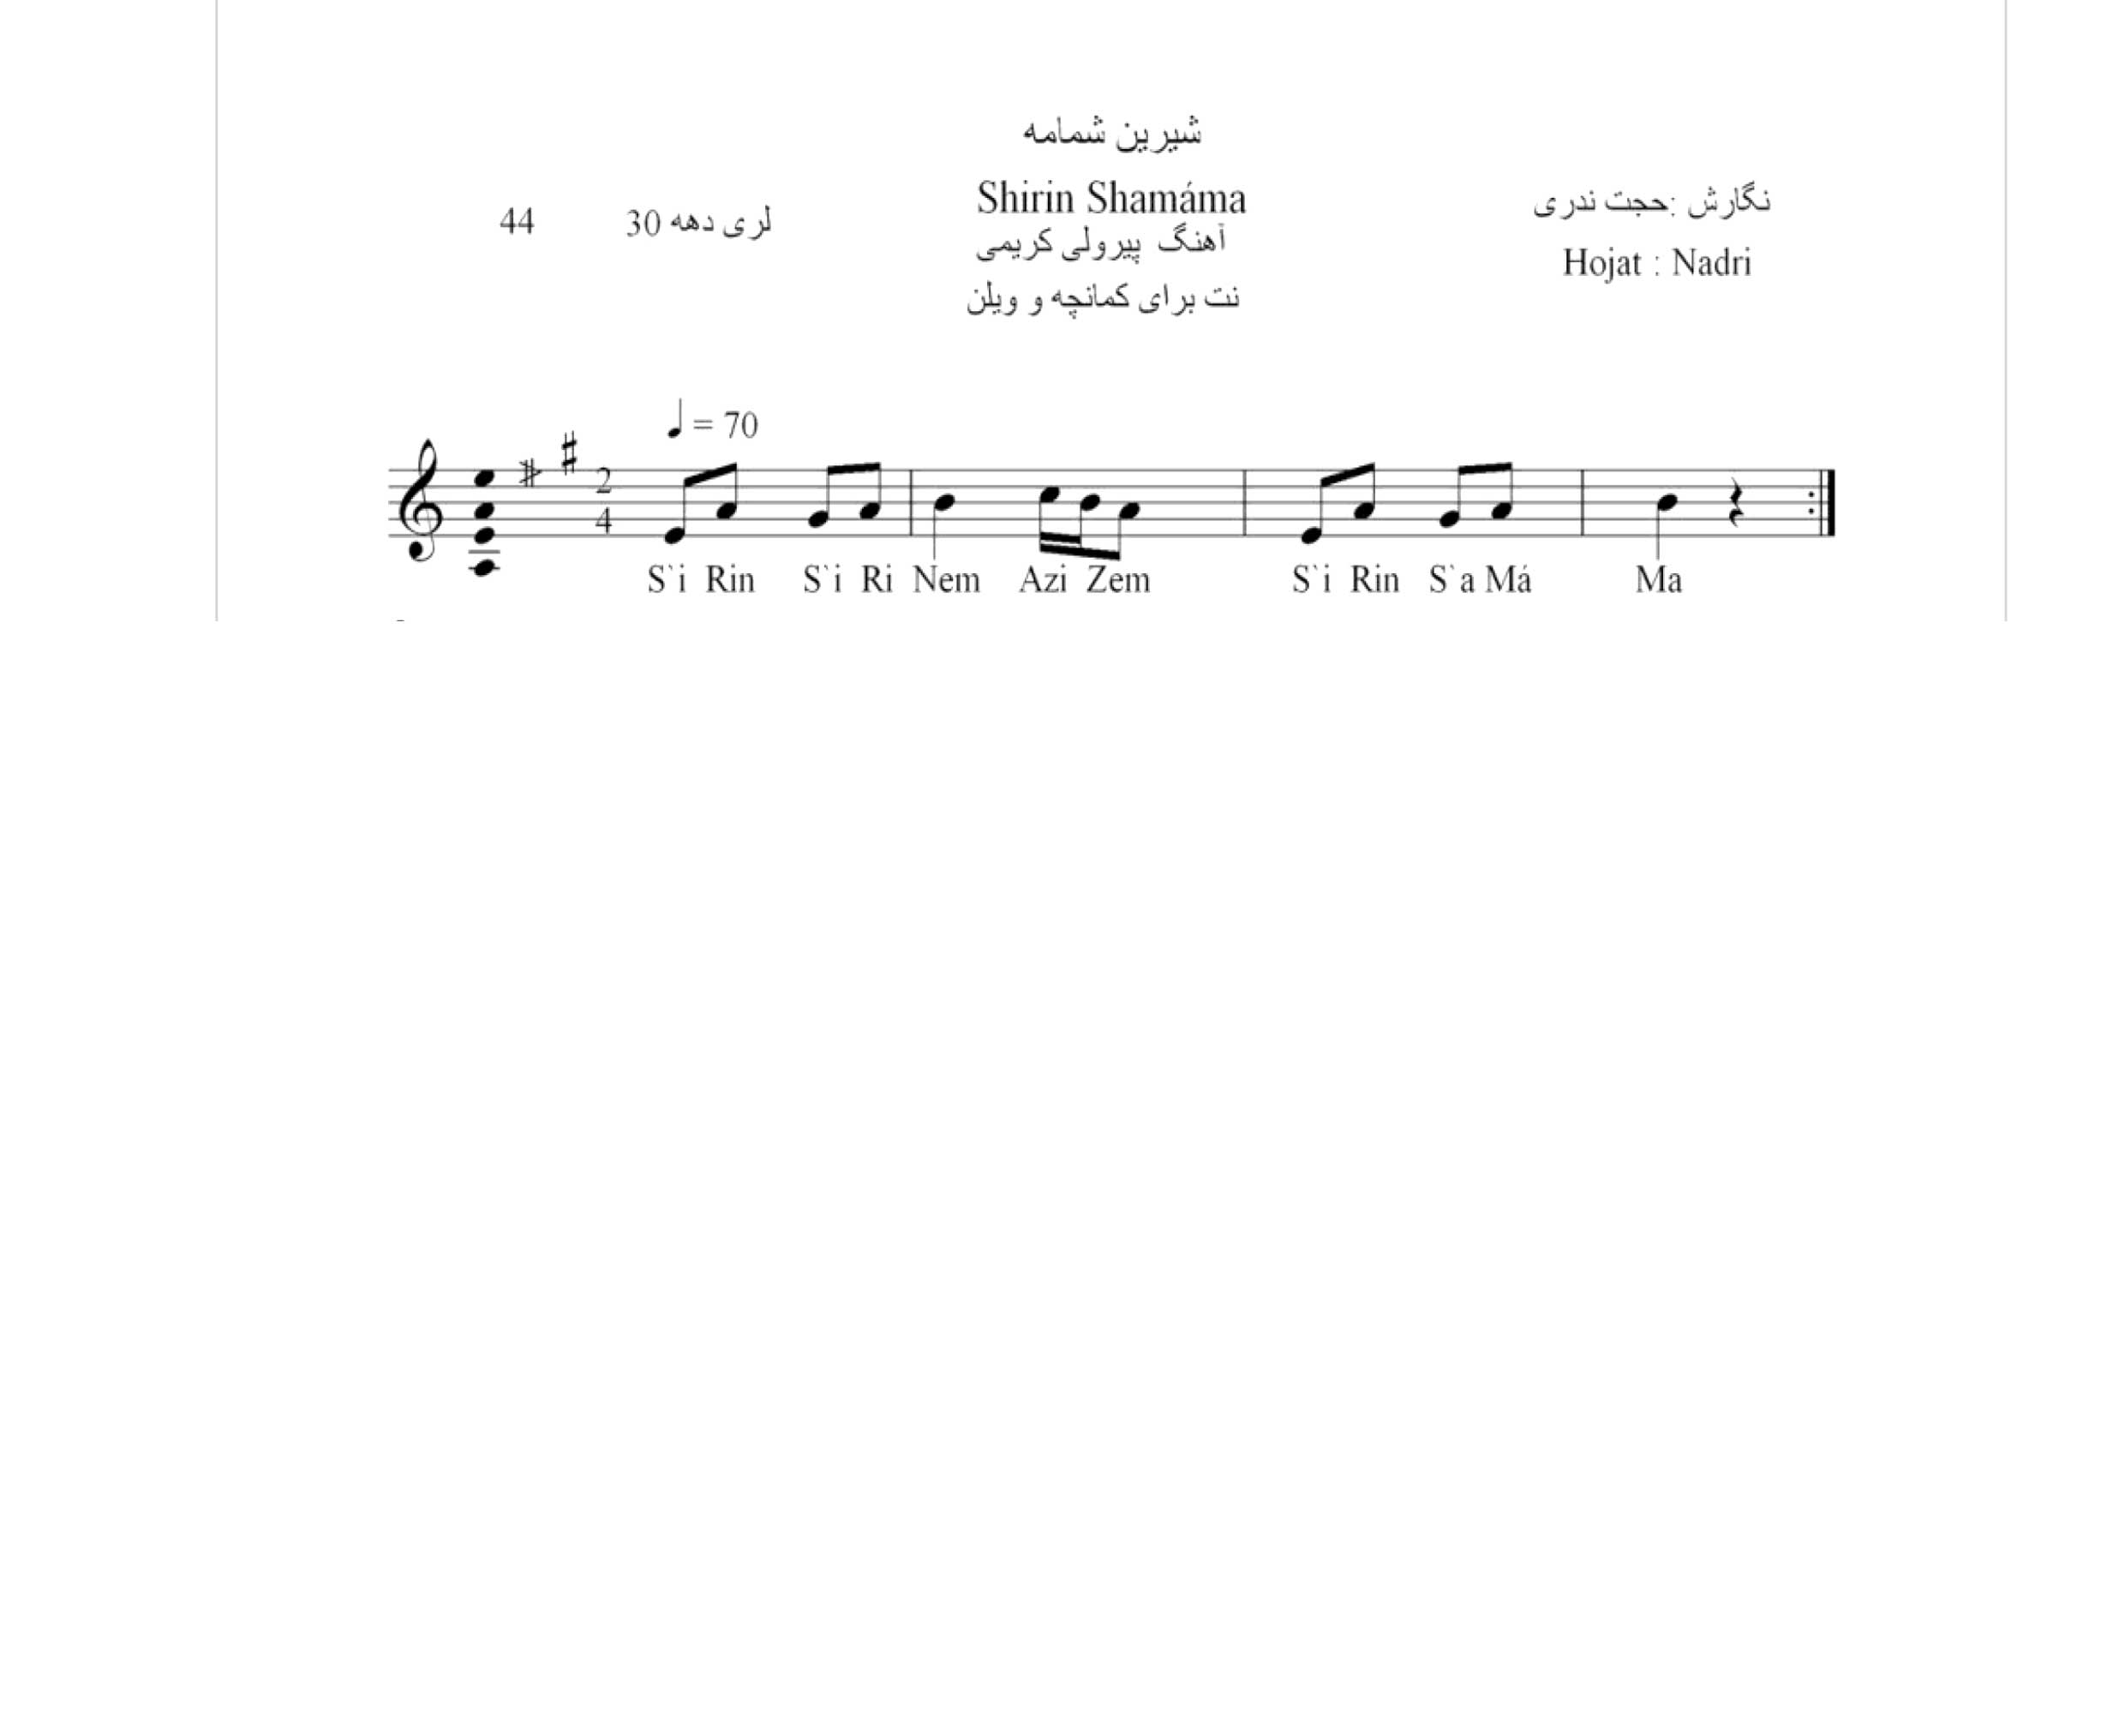 نت آهنگ محلی لری شیرین شمامه حجت اله ندری قابل اجرا با کمانچه و دیگر سازها